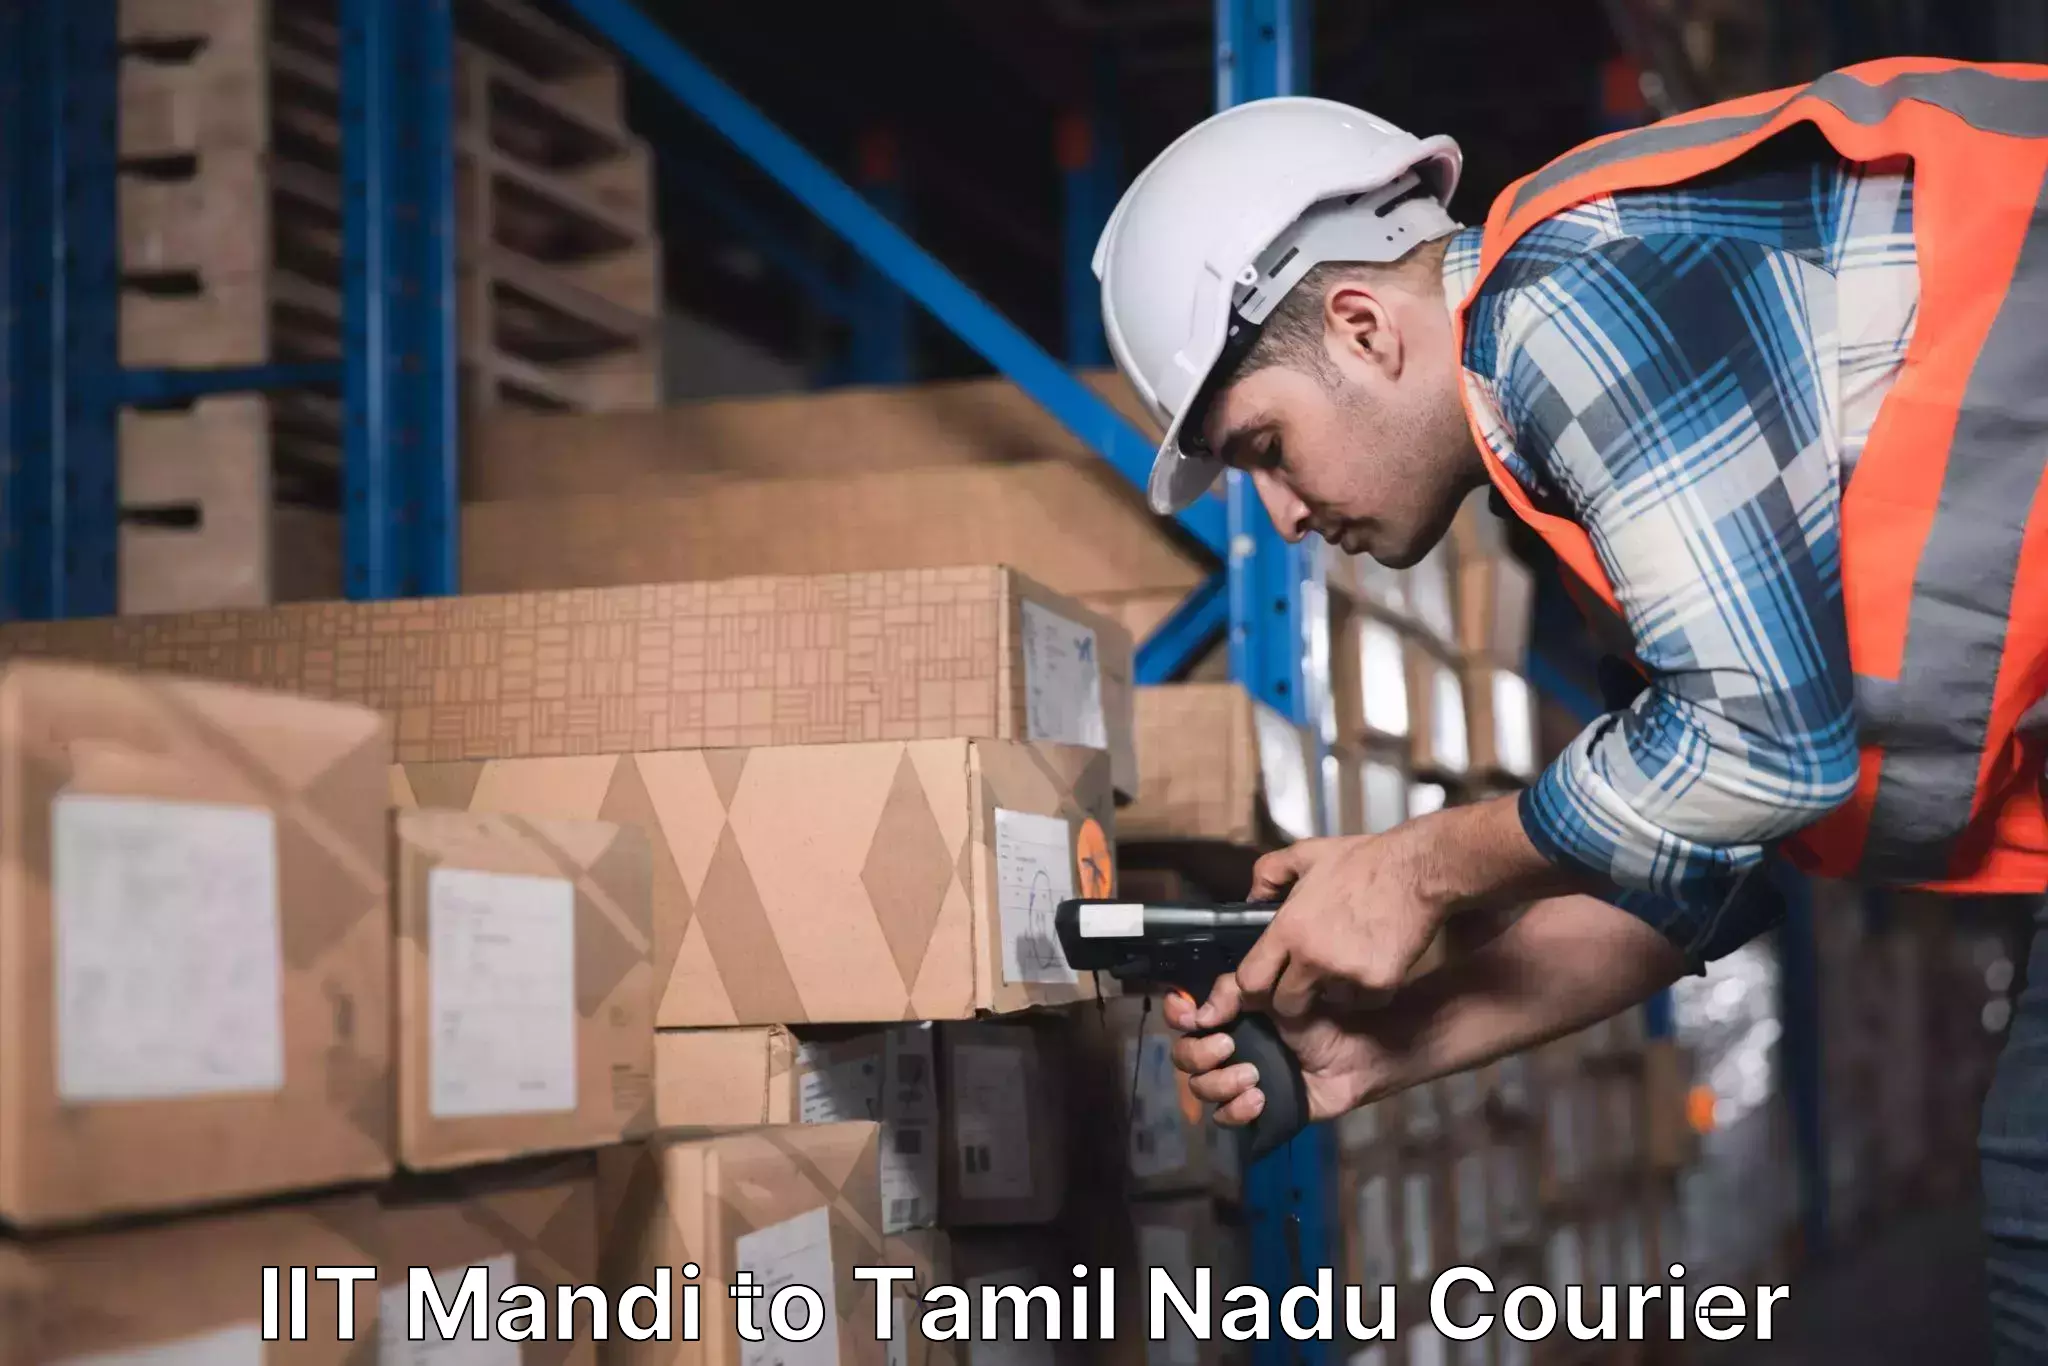 Urban courier service IIT Mandi to Tamil Nadu